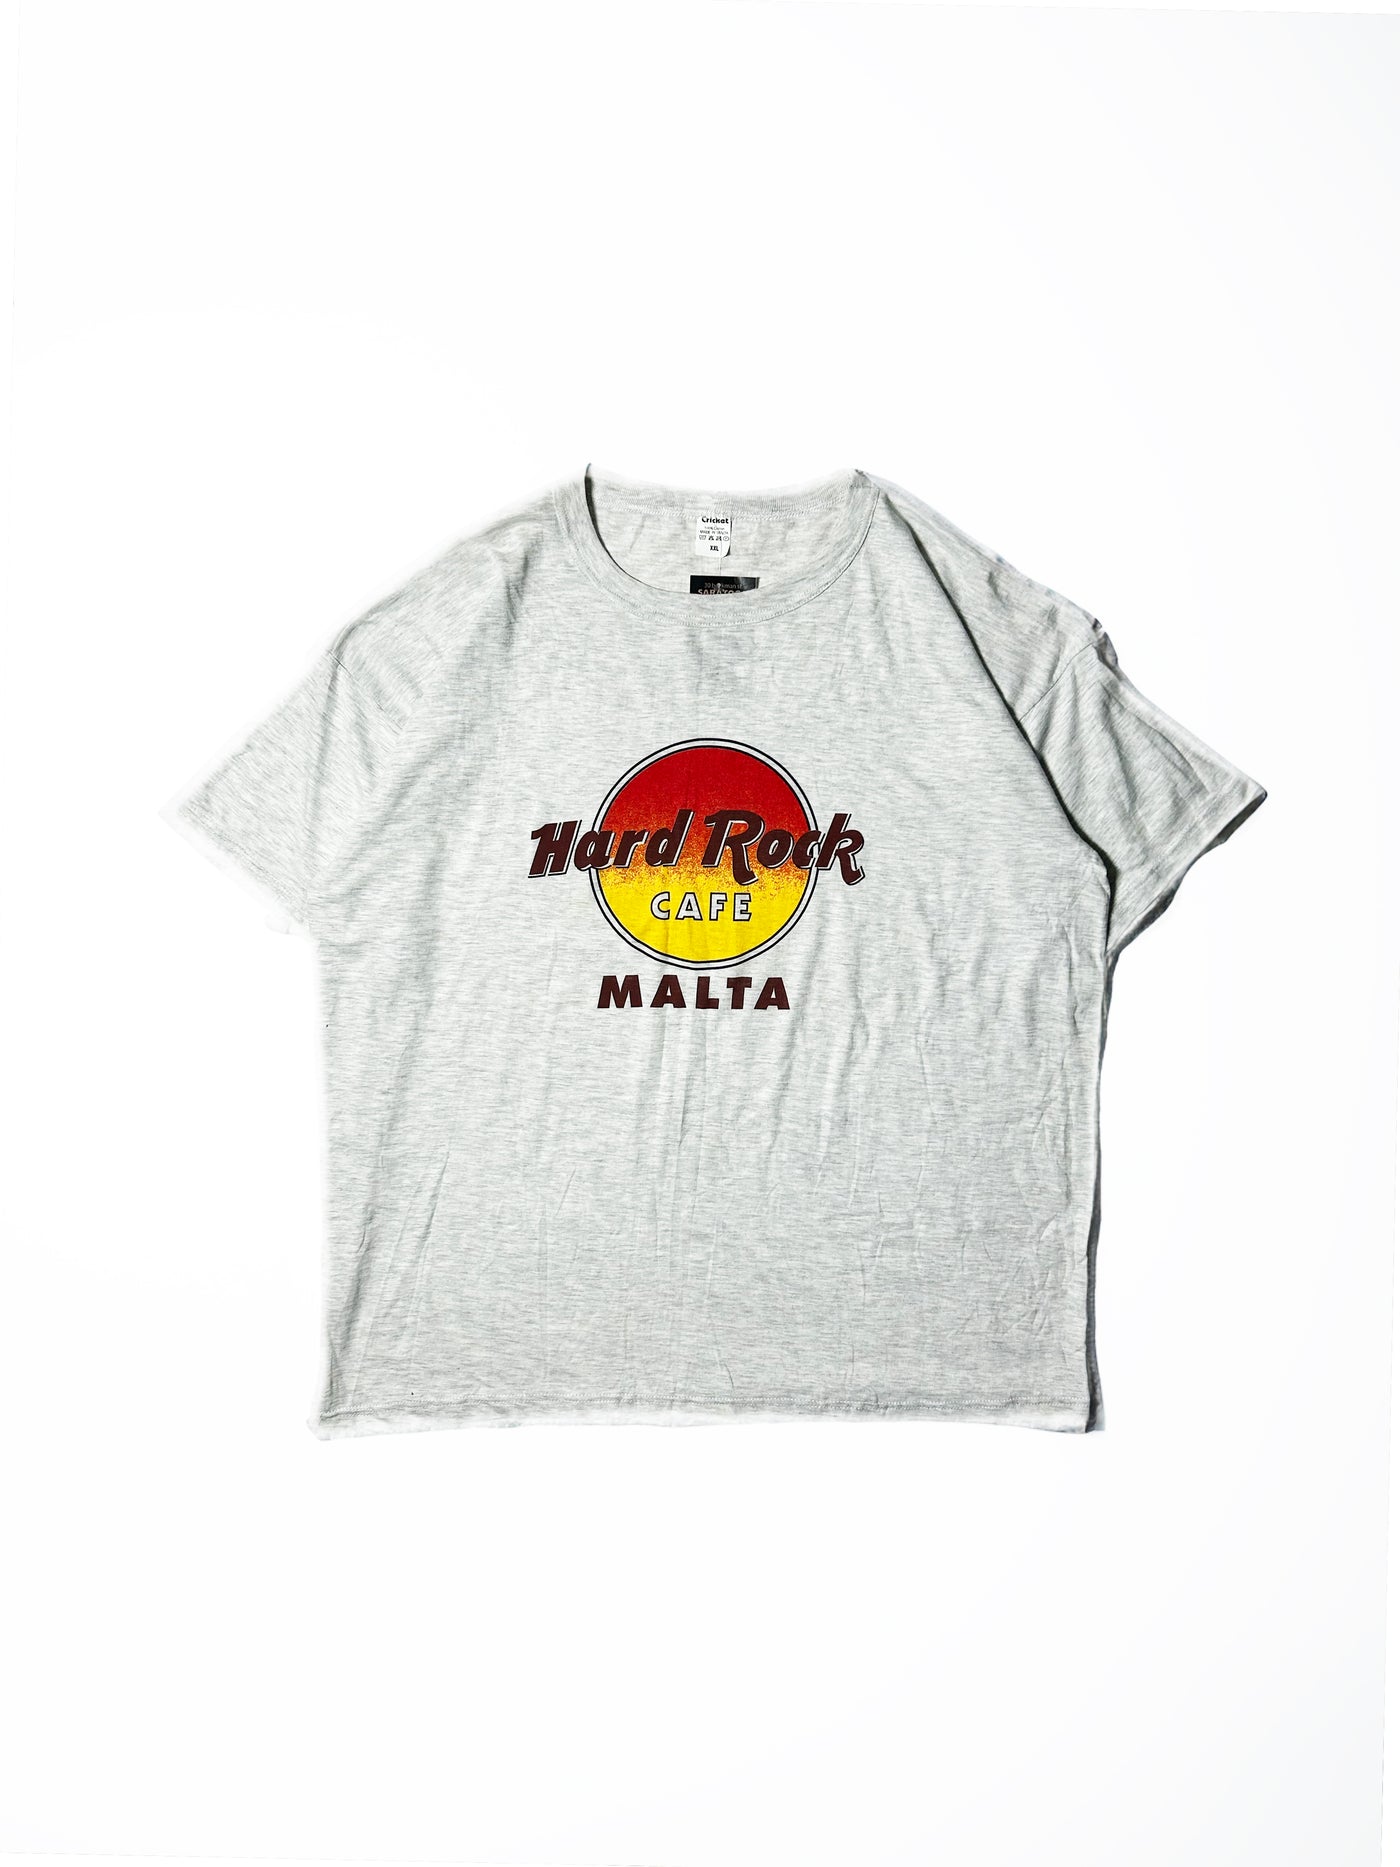 Vintage 90s Hard Rock Cafe Malta T-Shirt